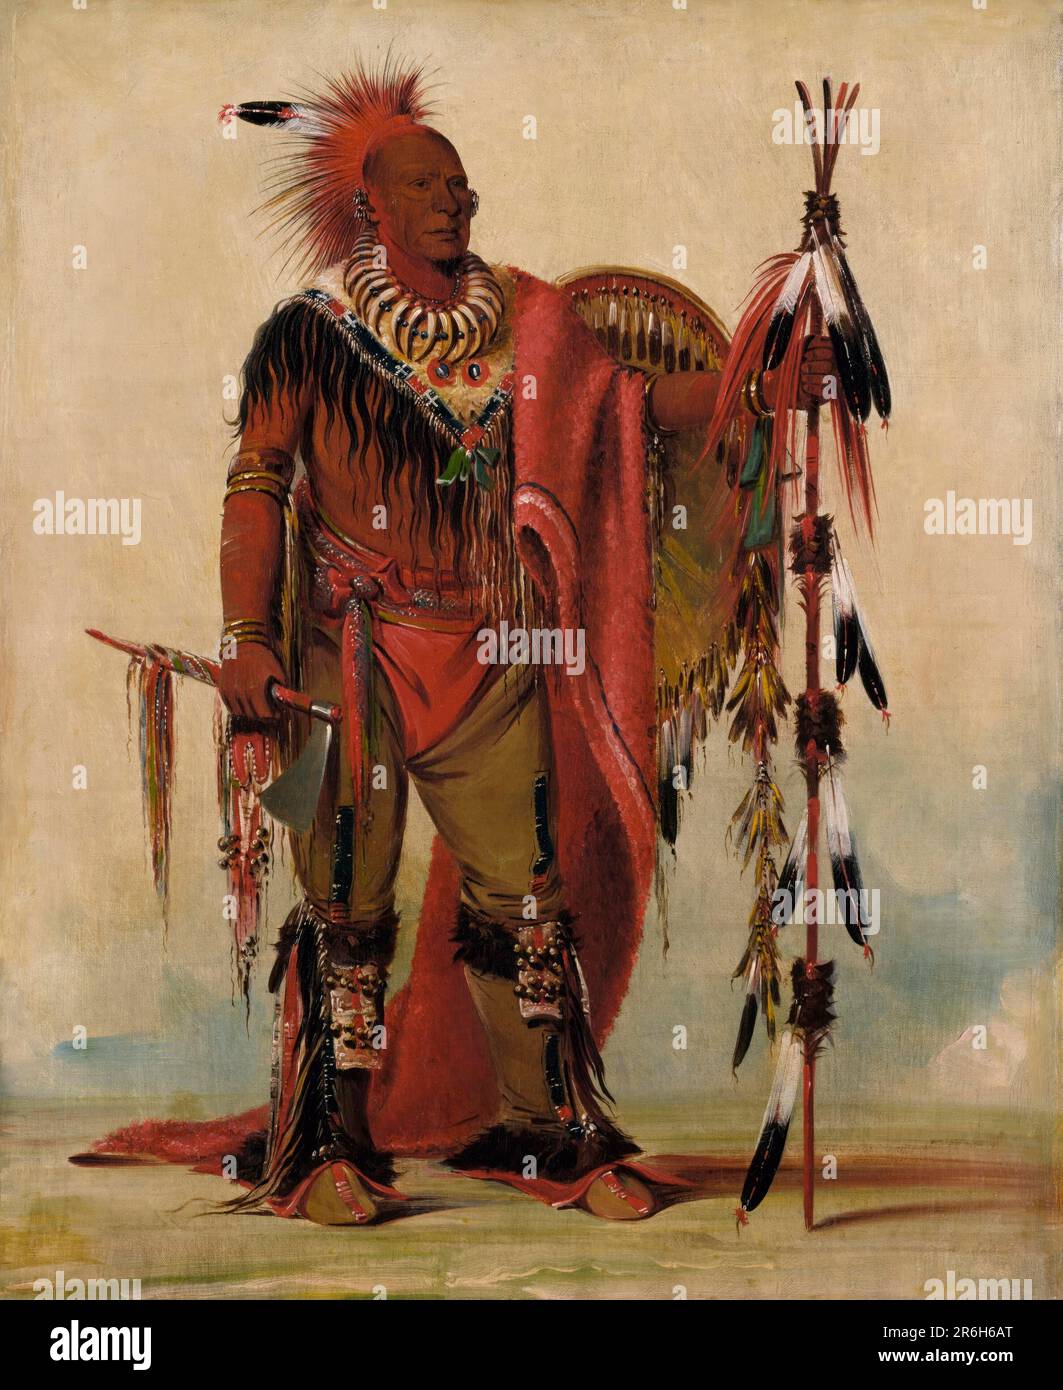 Kee-o-kúk, der wachsame Fuchs, Häuptling des Stammes. Öl auf Segeltuch. Datum: 1835. Museum: Smithsonian American Art Museum. Stockfoto